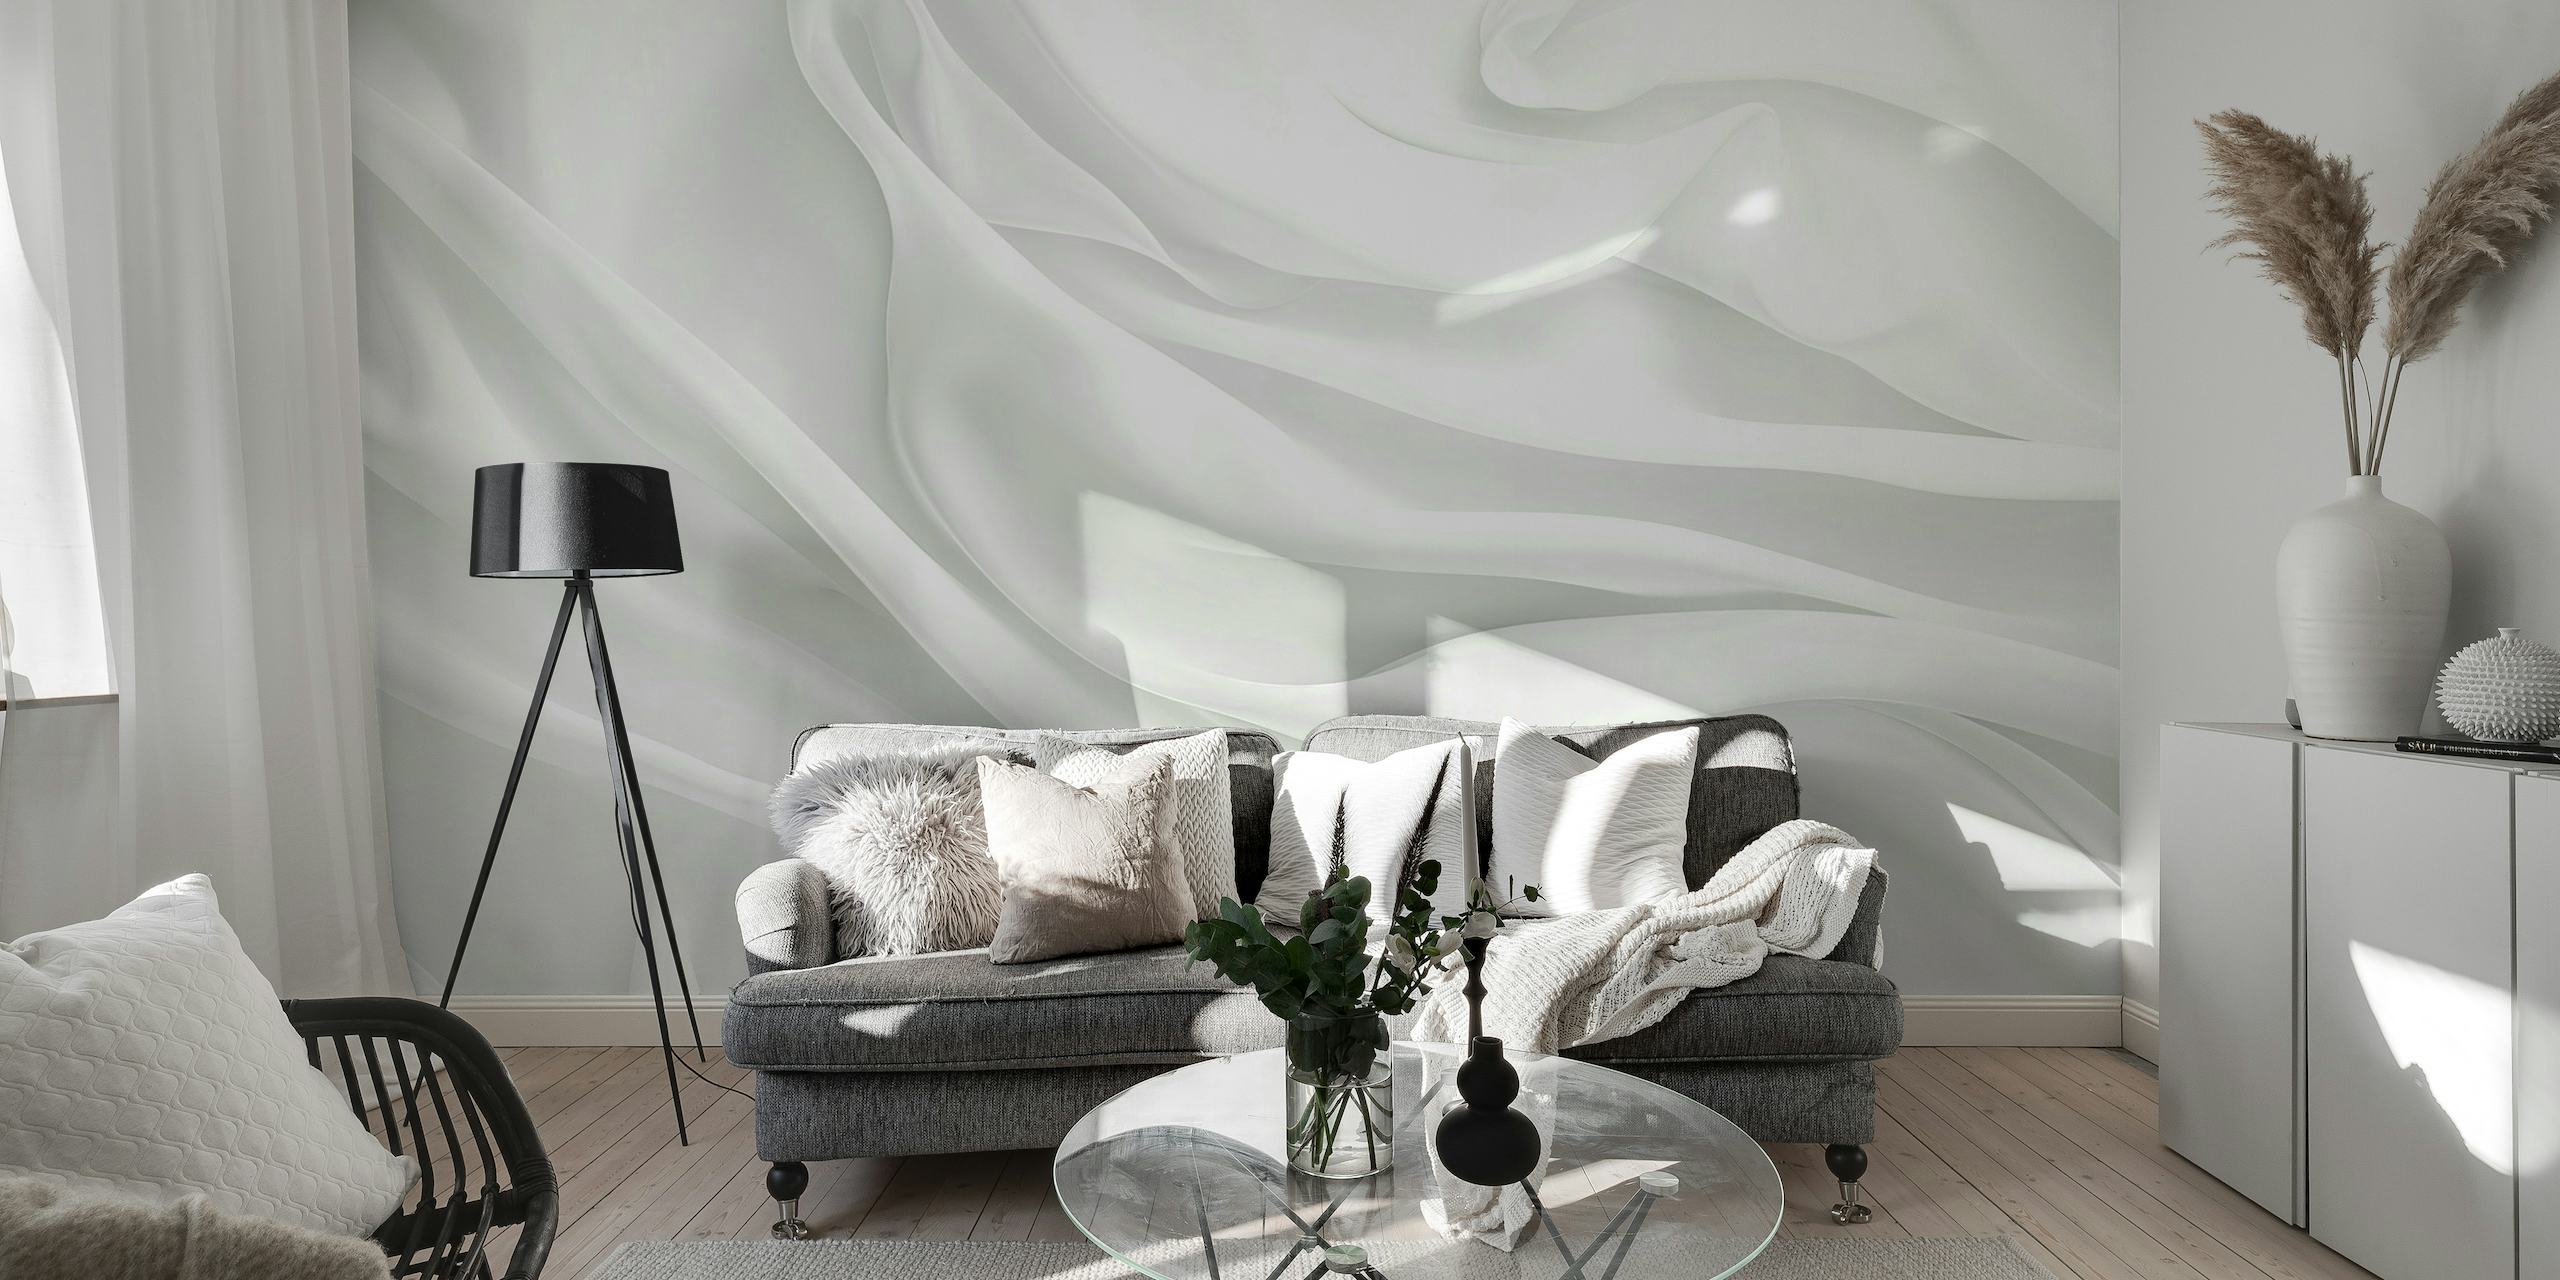 Fotomural vinílico de parede elegante com textura de seda branca para interiores modernos